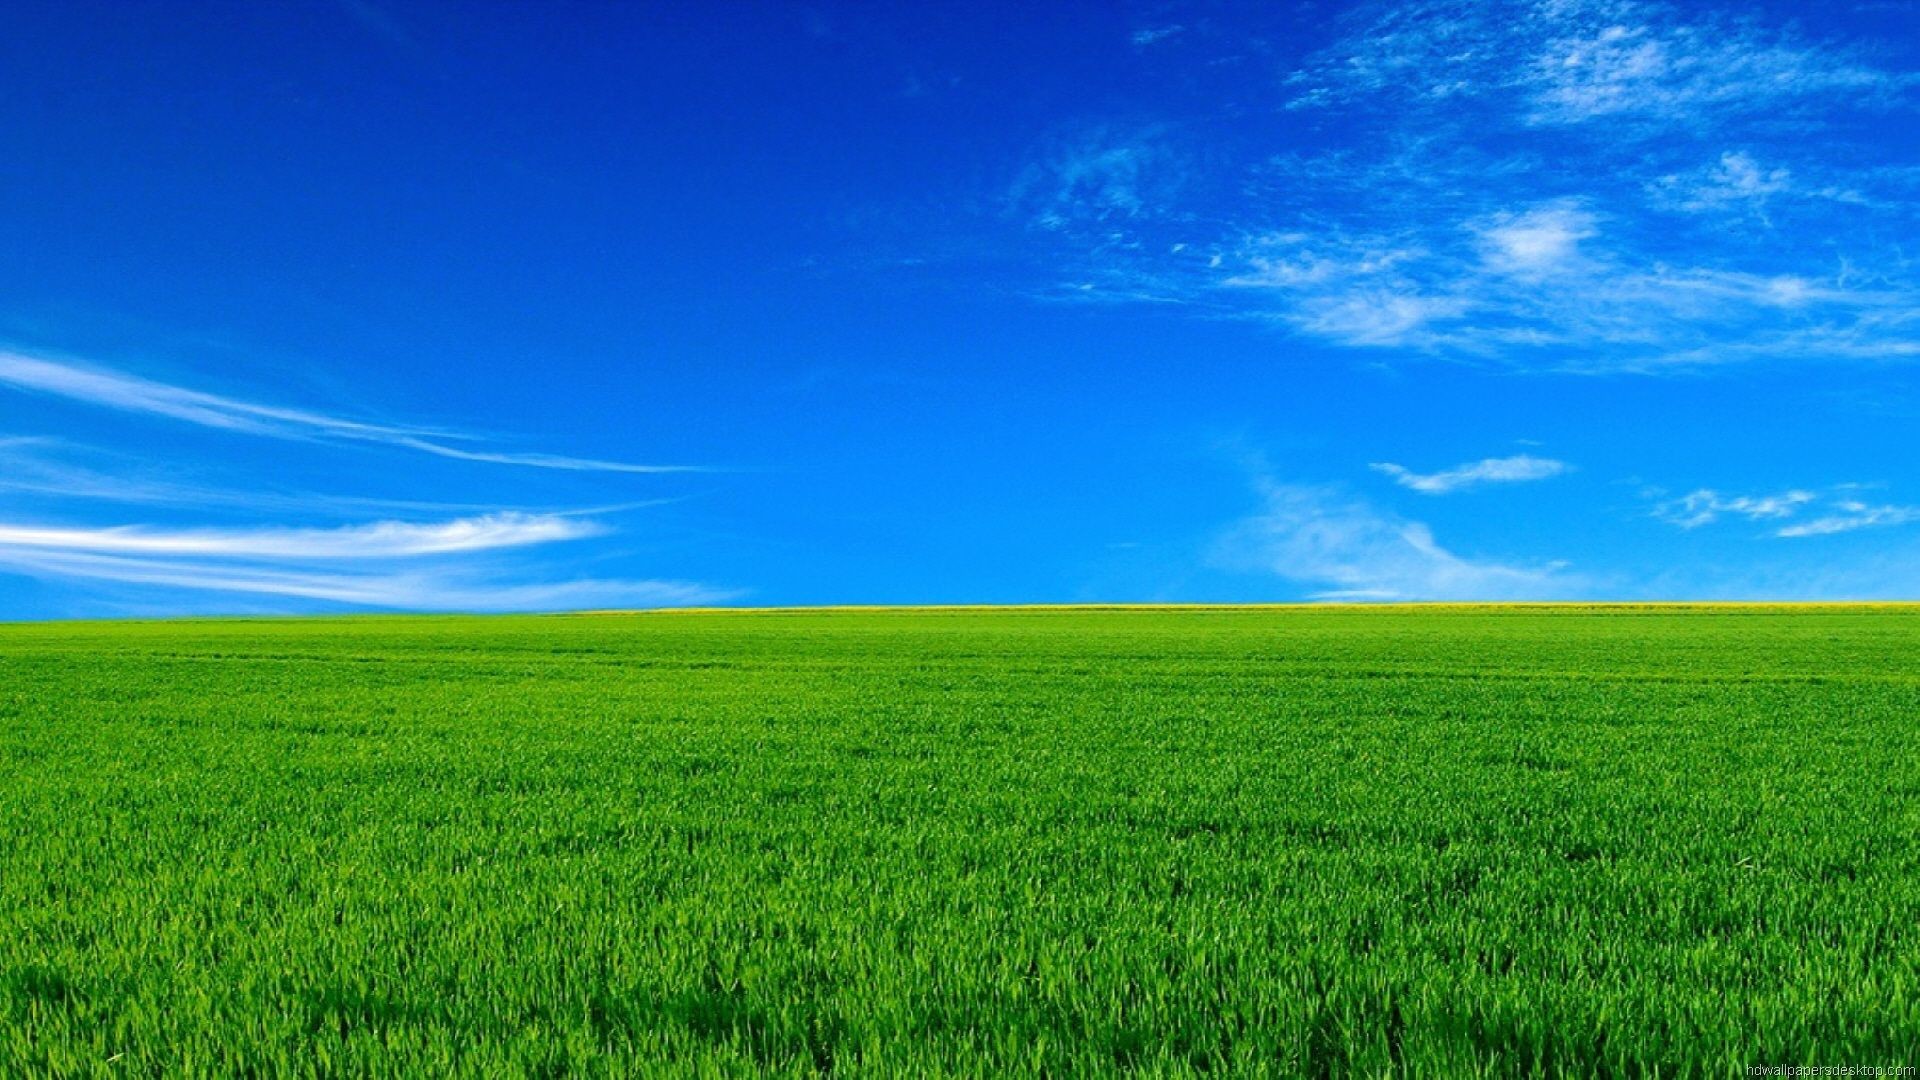 Hình nền đồng cỏ xanh rộng lớn